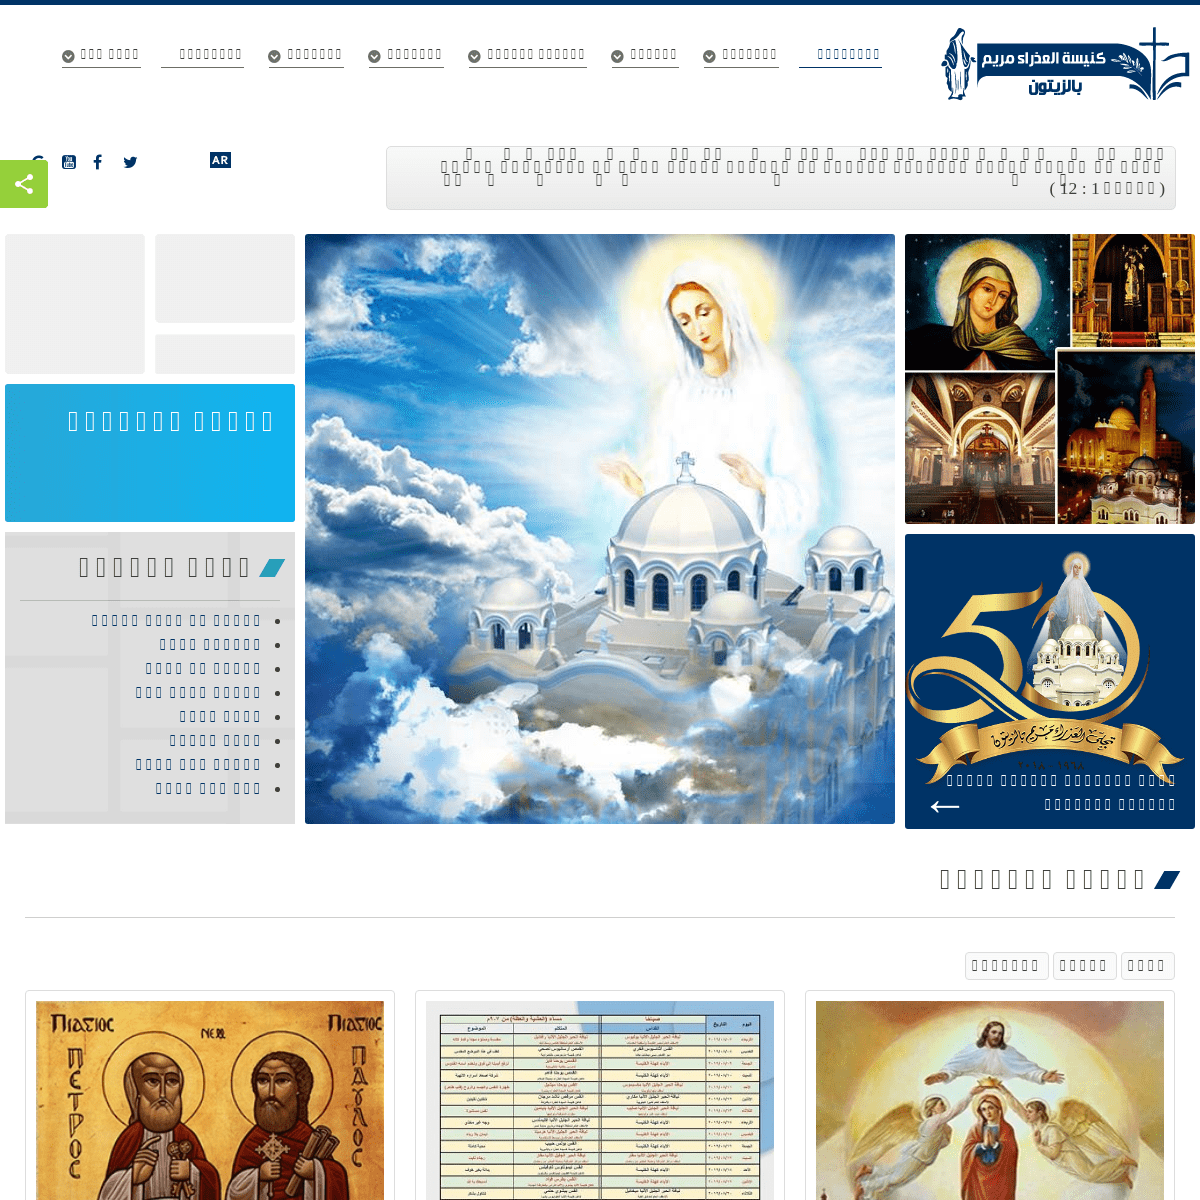 الرئيسية - بطريركية الاقباط الارثوذكس - كنيسة السيدة العذراء مريم بالزيتون - الموقع الرسمي